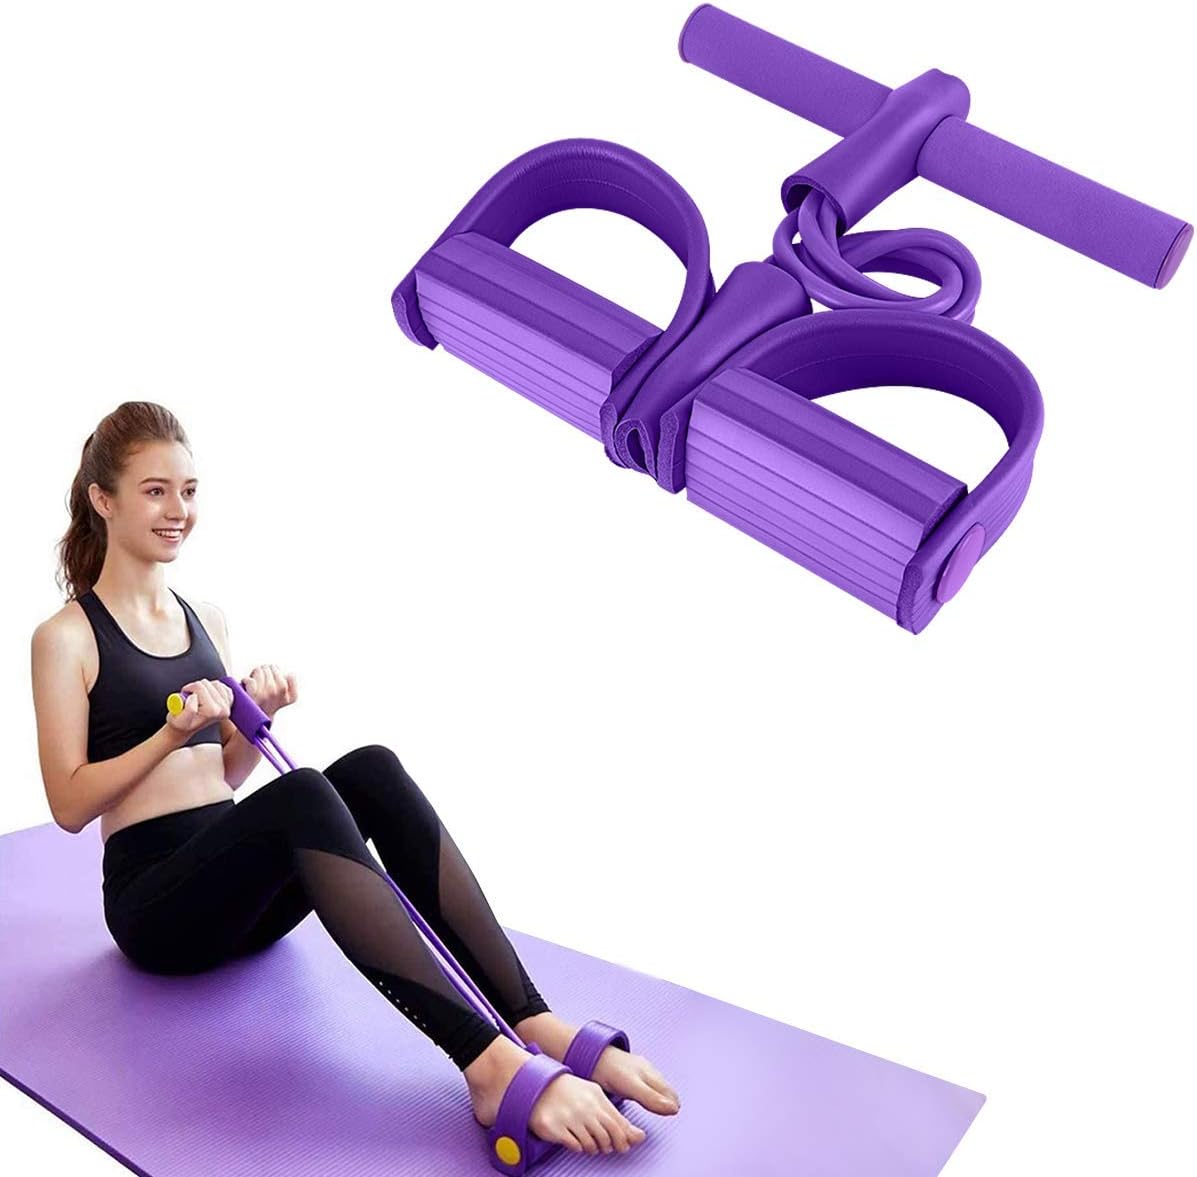 MELEDE Yoga Tension Rope - Resistance Bands Pedal Exerciser